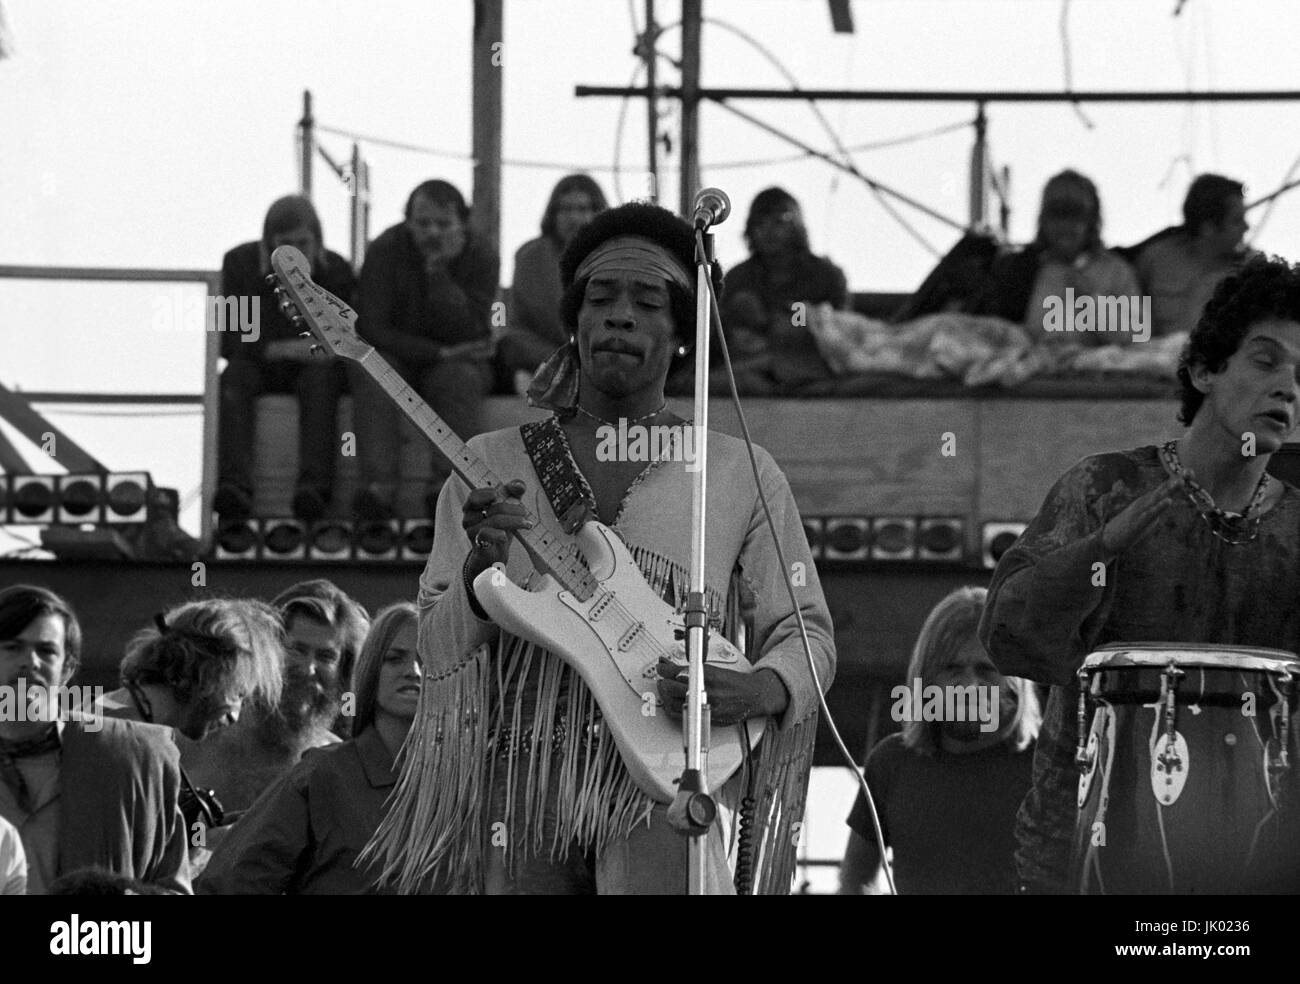 Jimi Hendrix l'exécution de son légendaire 2 heure performance à Woodstock Music & Arts Festival tenue le Sam Yasgur's champ de luzerne dans le comté de Sullivan à Bethal, New York le 18 août 1969. Hendrix a insisté pour qu'il près le festival et devait comparaître à minuit, mais en raison de retards n'a pas pris la scène jusqu'à 9 h le lundi matin. La plupart de la foule avait quitté pour la maison d'ici là et avait diminué de pas moins de 500 000 $ à 80 000 misérables.© Peter Tarnoff / MediaPunch Banque D'Images